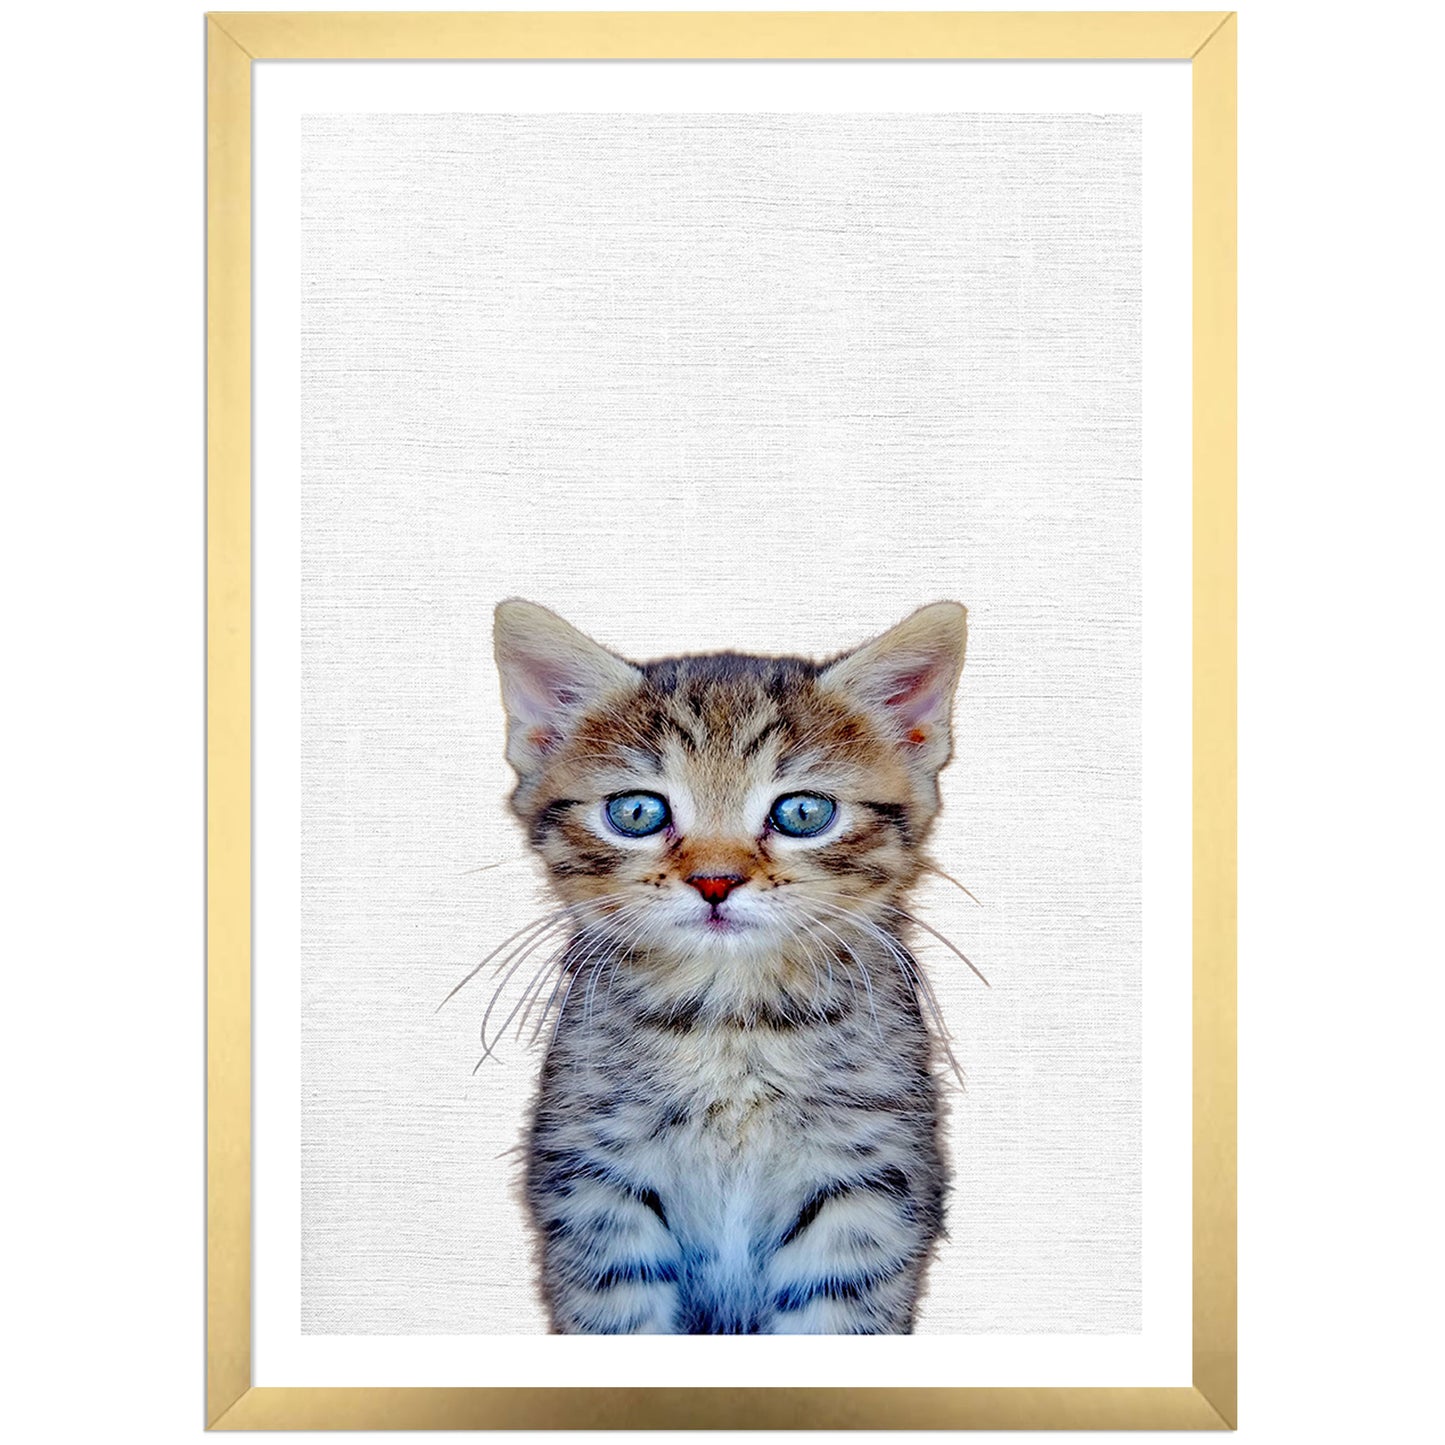 Cute Kitten Art Print